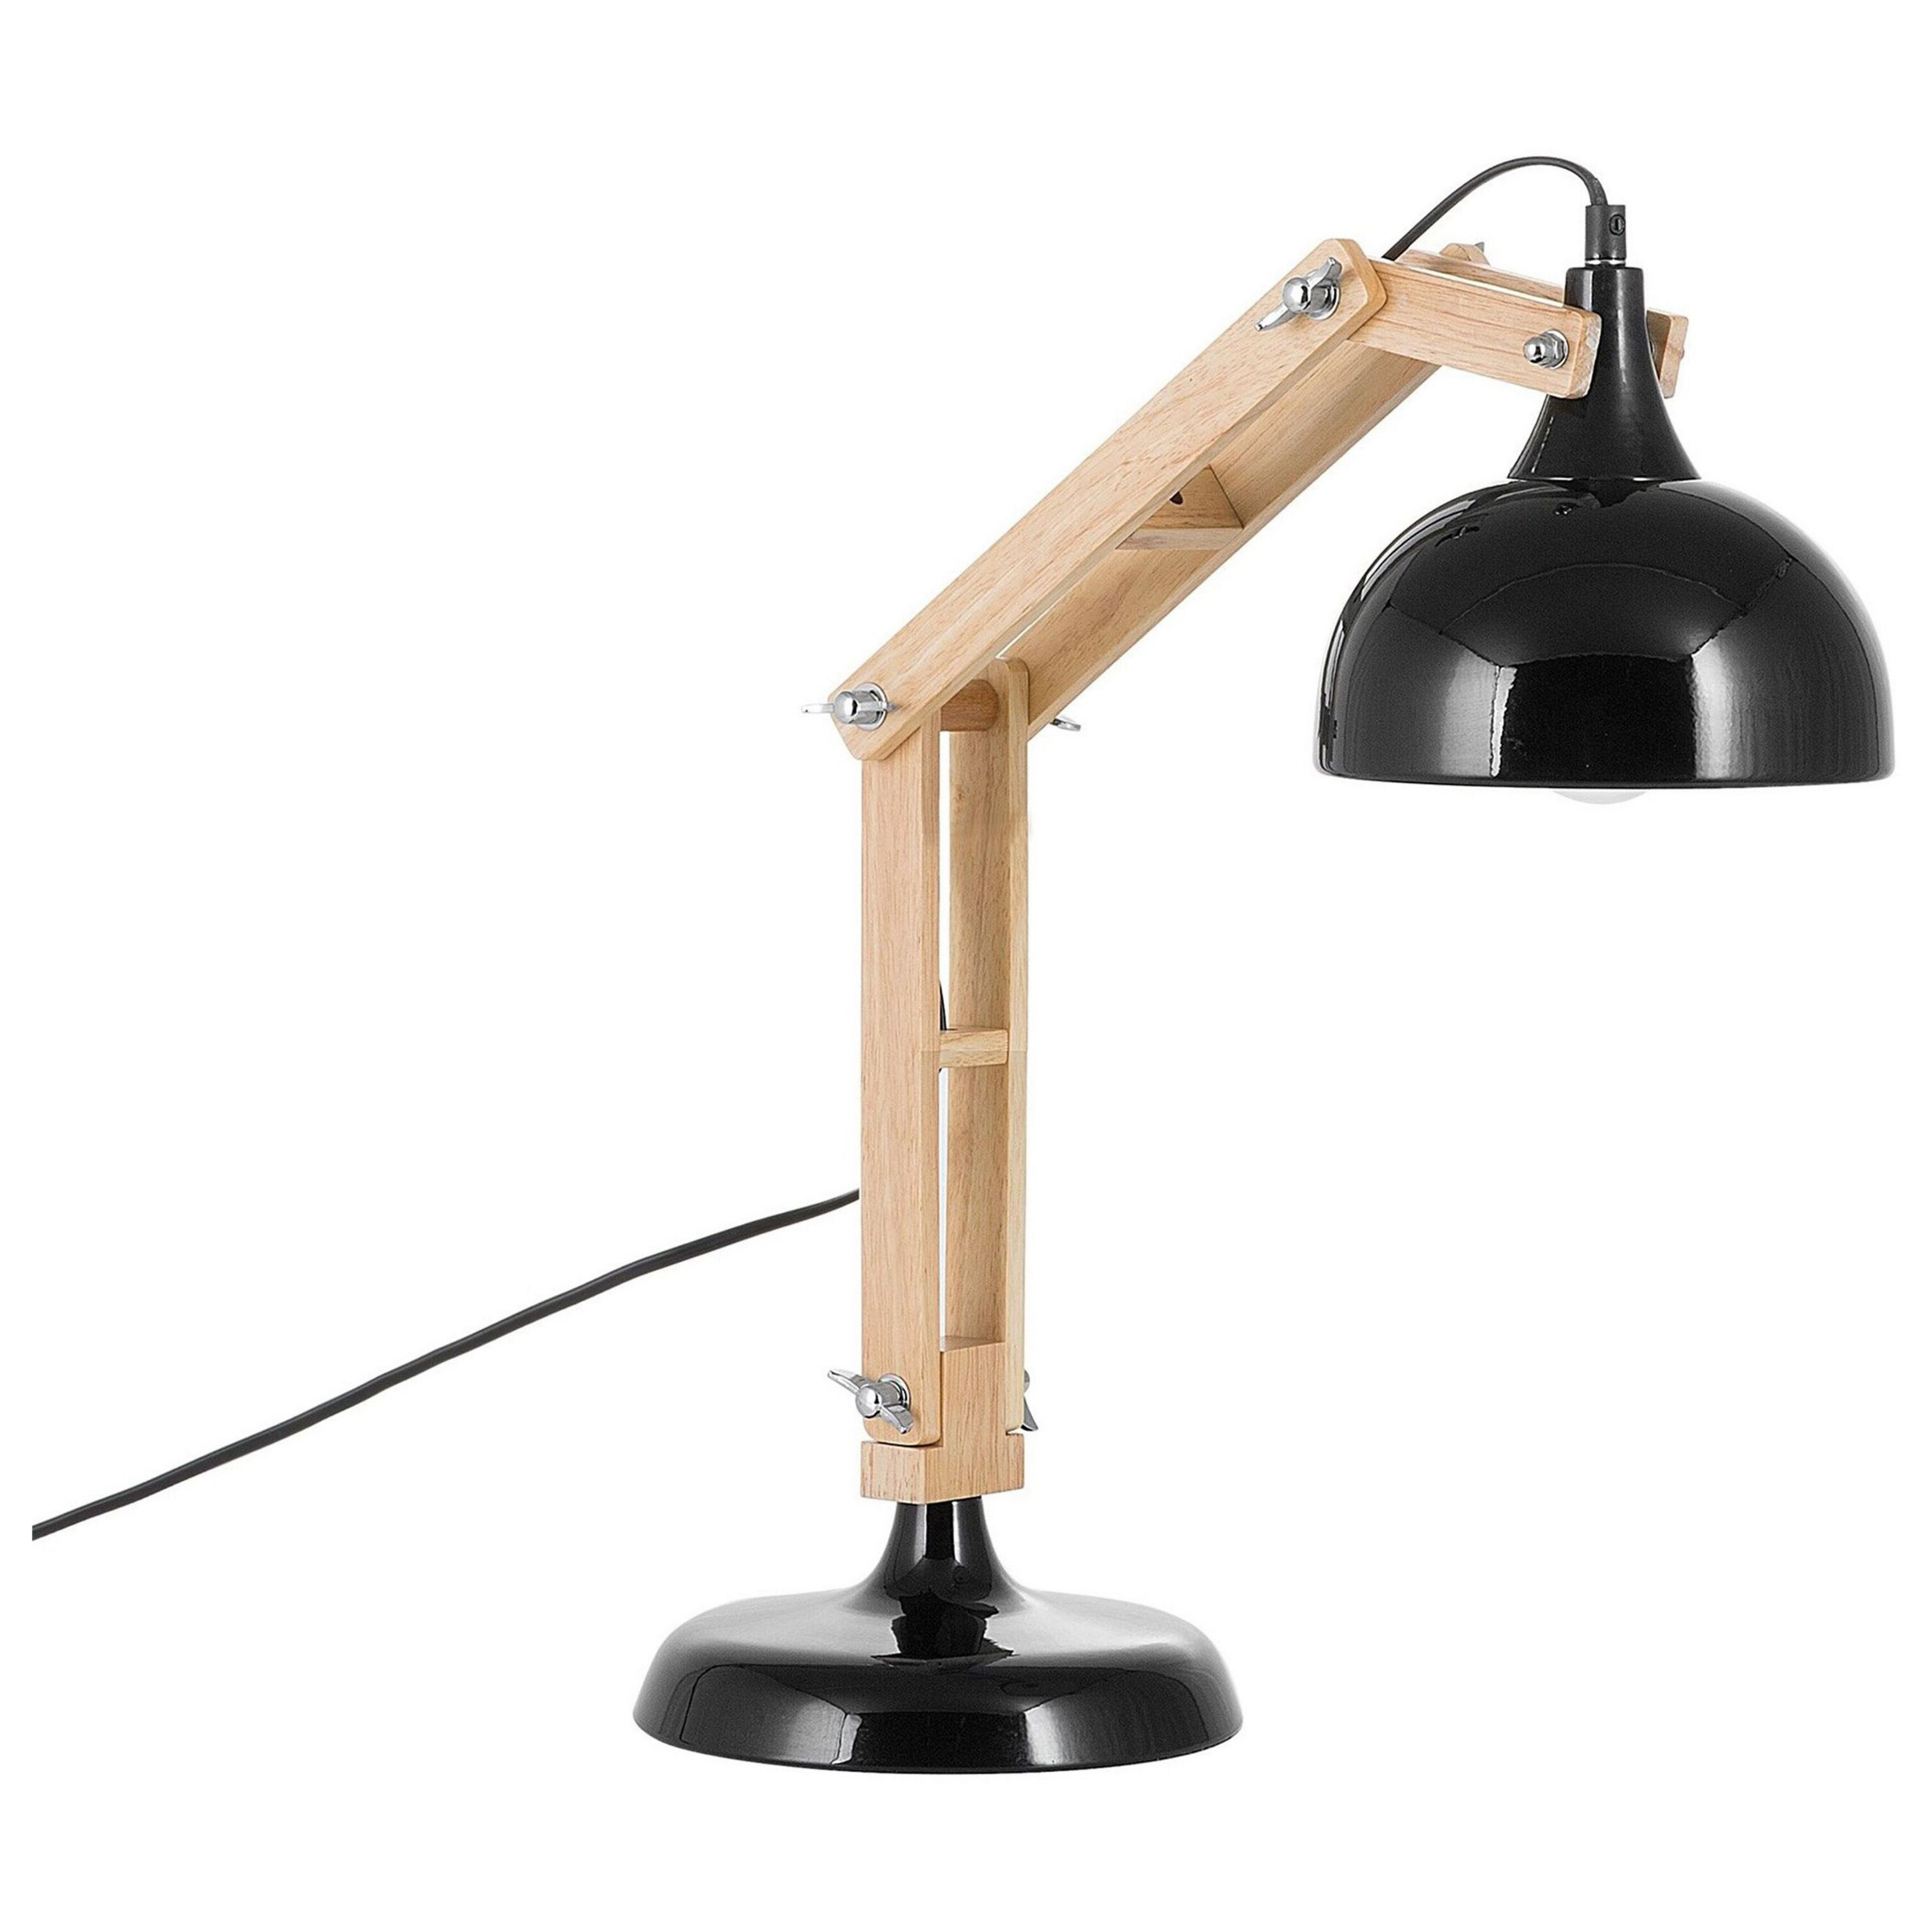 Beliani Desk Lamp Black Light Wood Swing Adjustable Arm Metal Shade Table Light